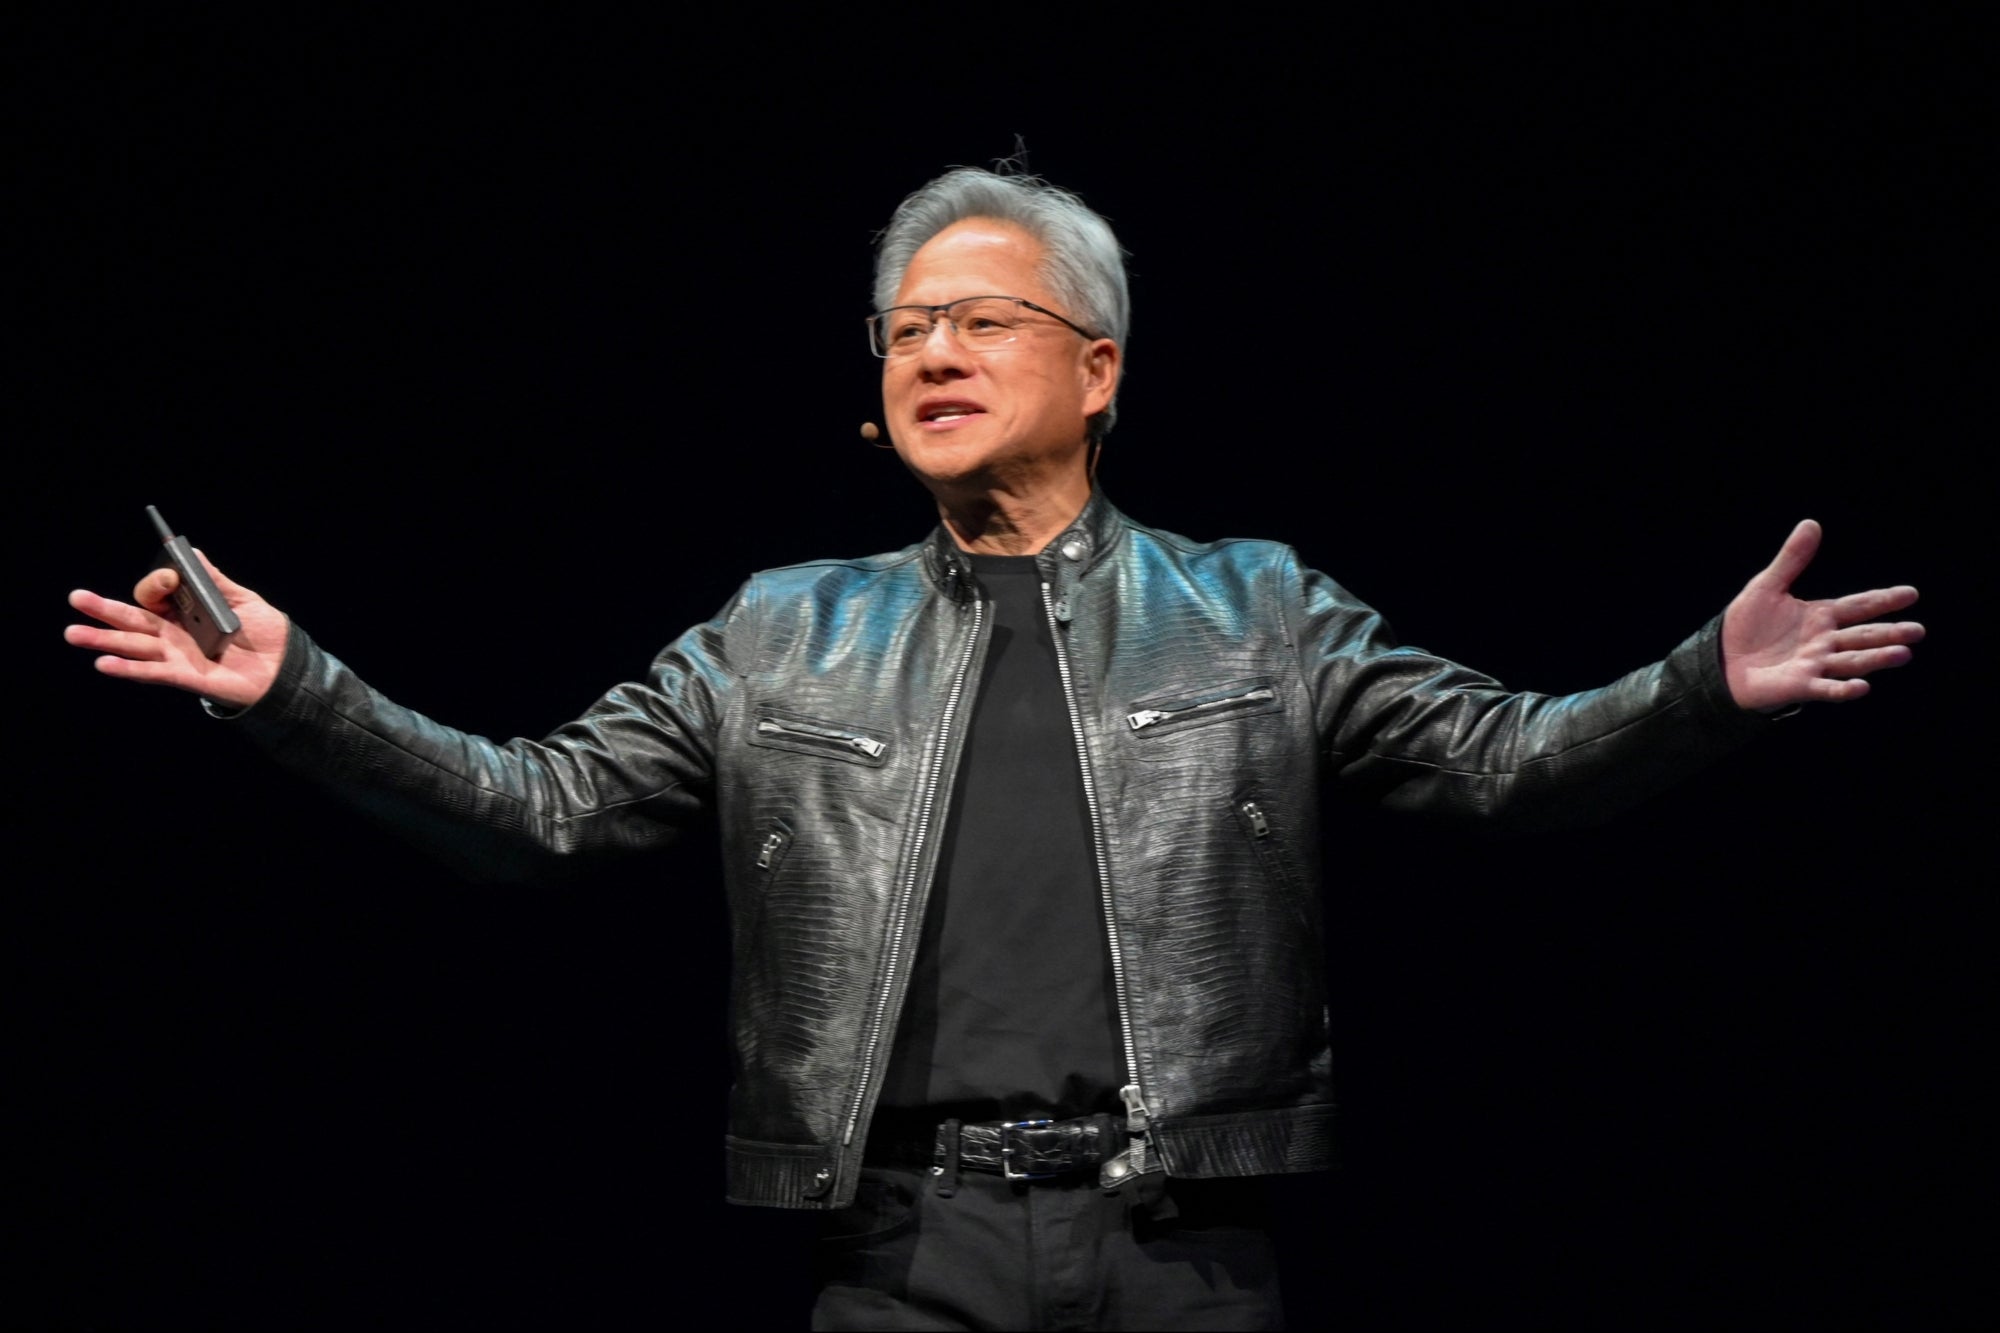 Em apenas 5 palavras, o CEO da Nvidia, Jensen Huang, resumiu a estratégia de domínio do chip AI da empresa